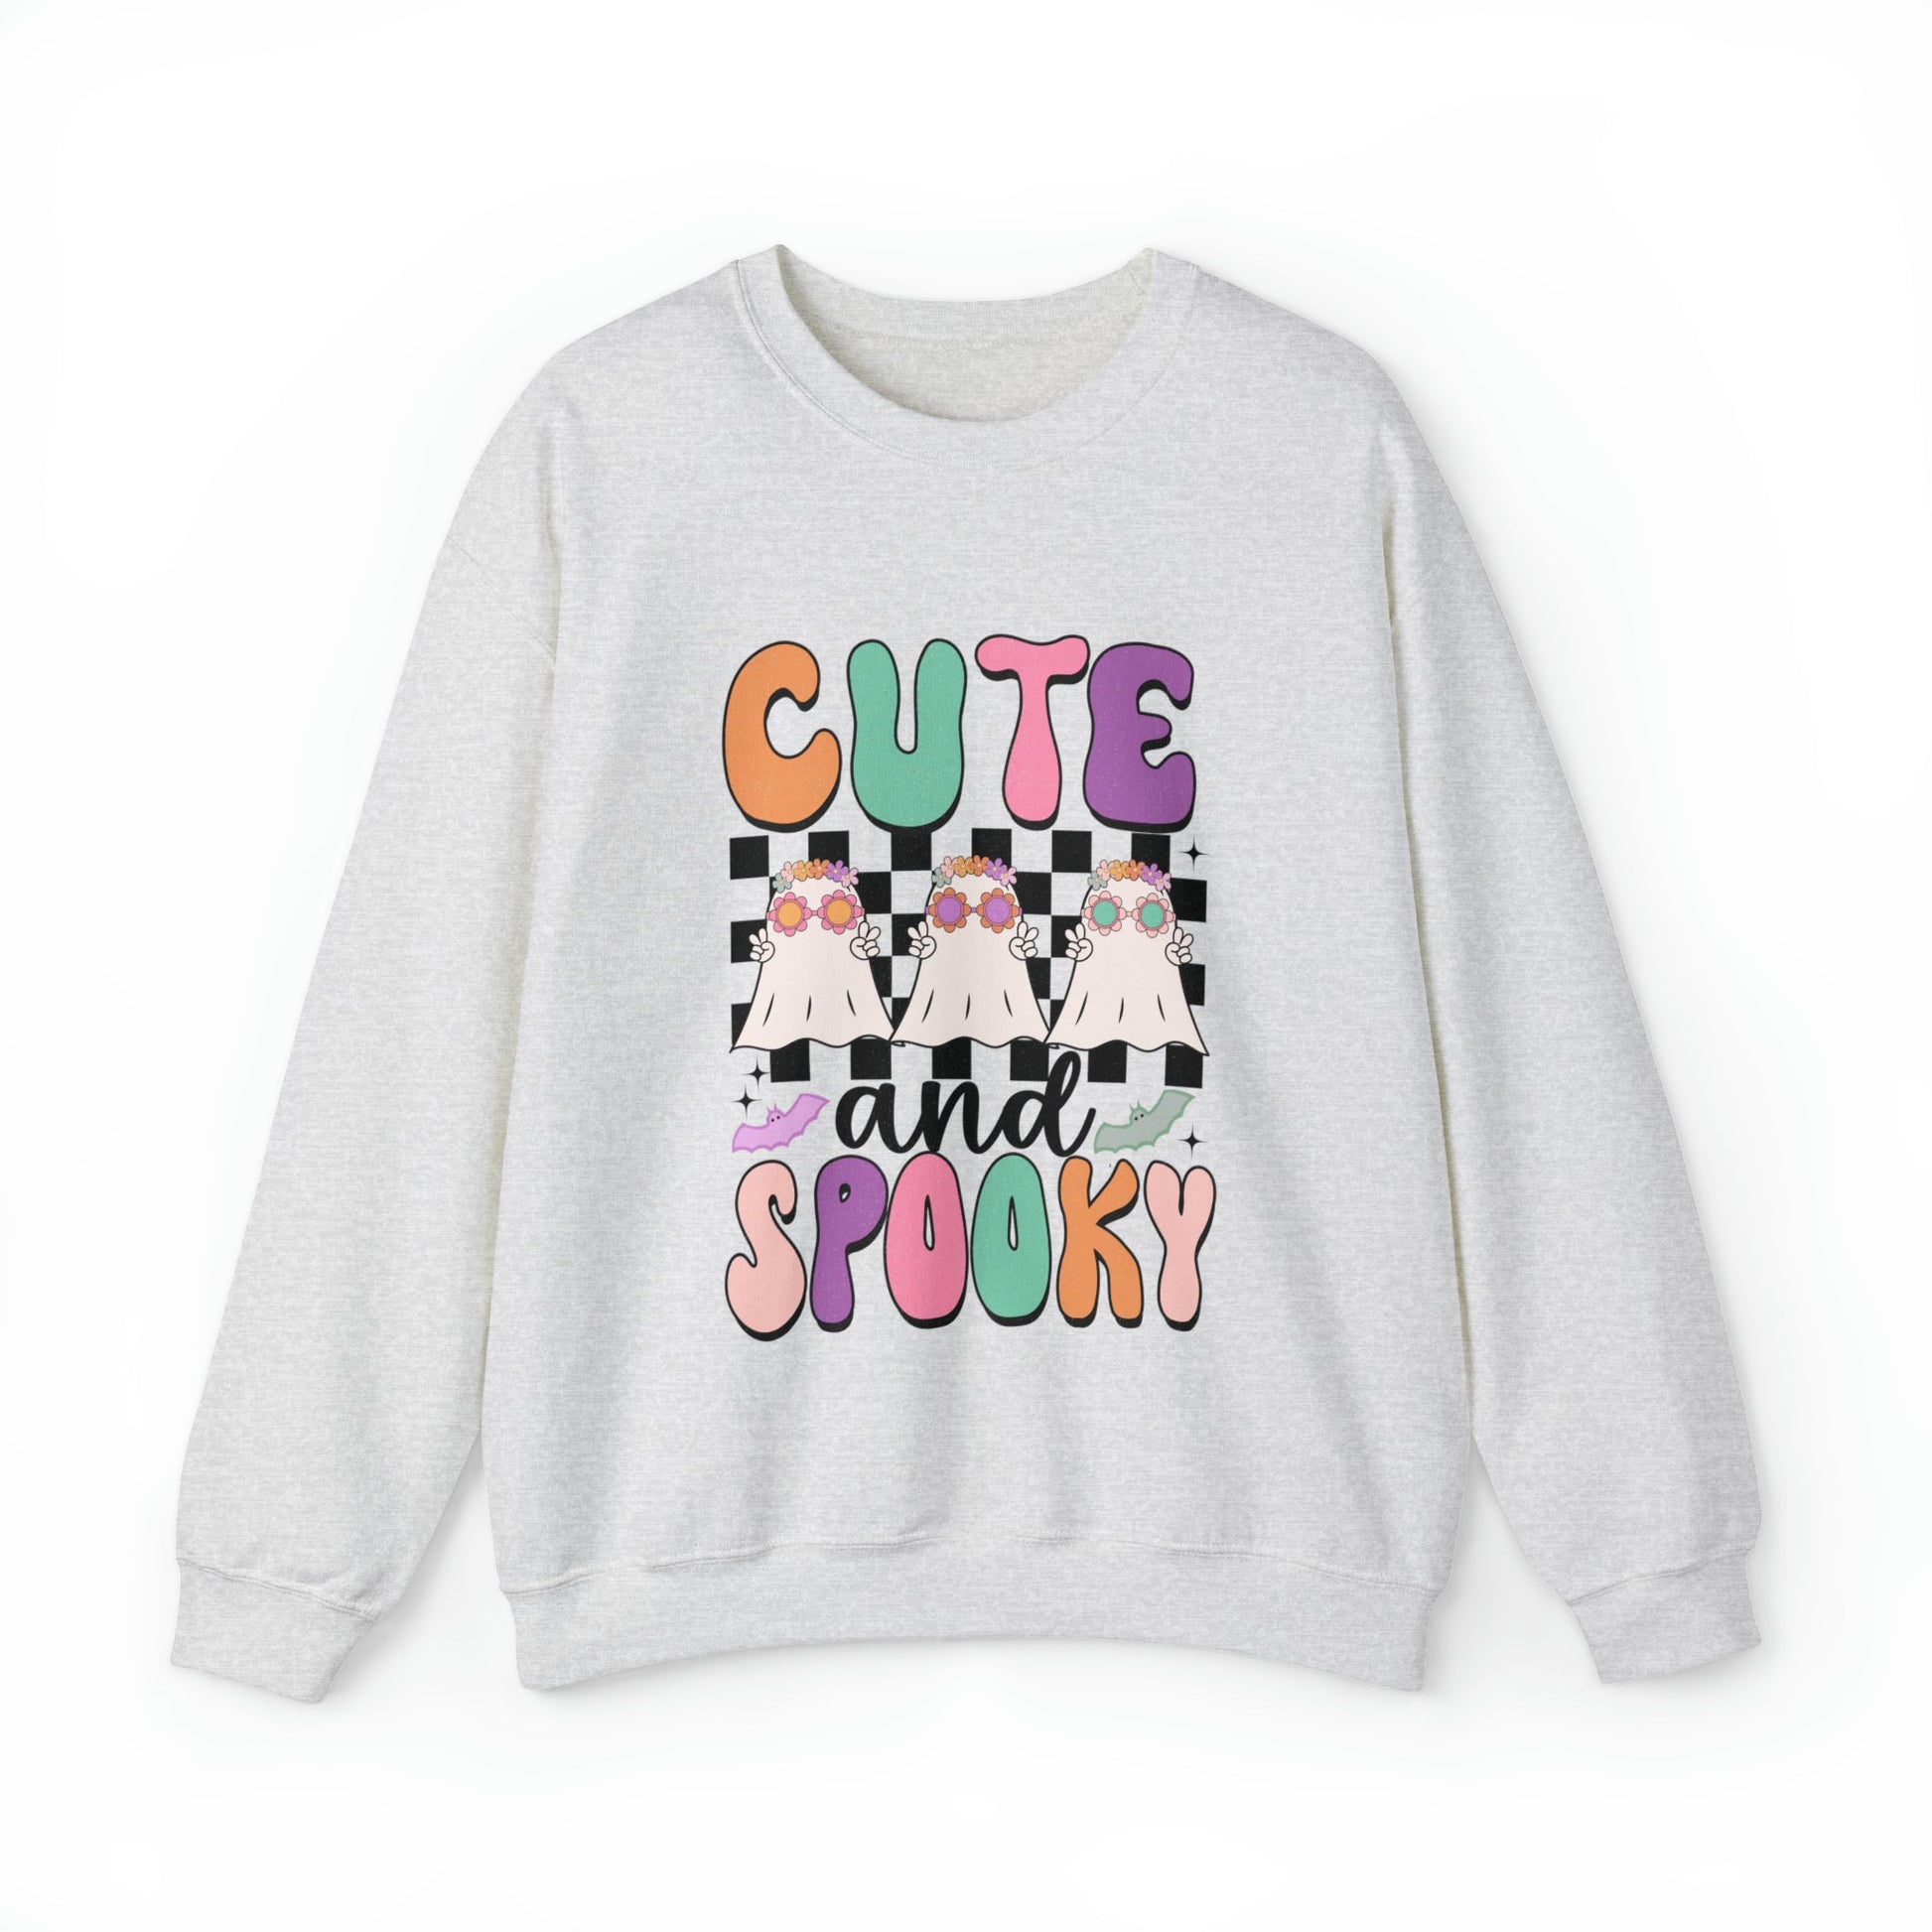 Cute & Spooky Sweatshirt - Designs by Lauren Ann